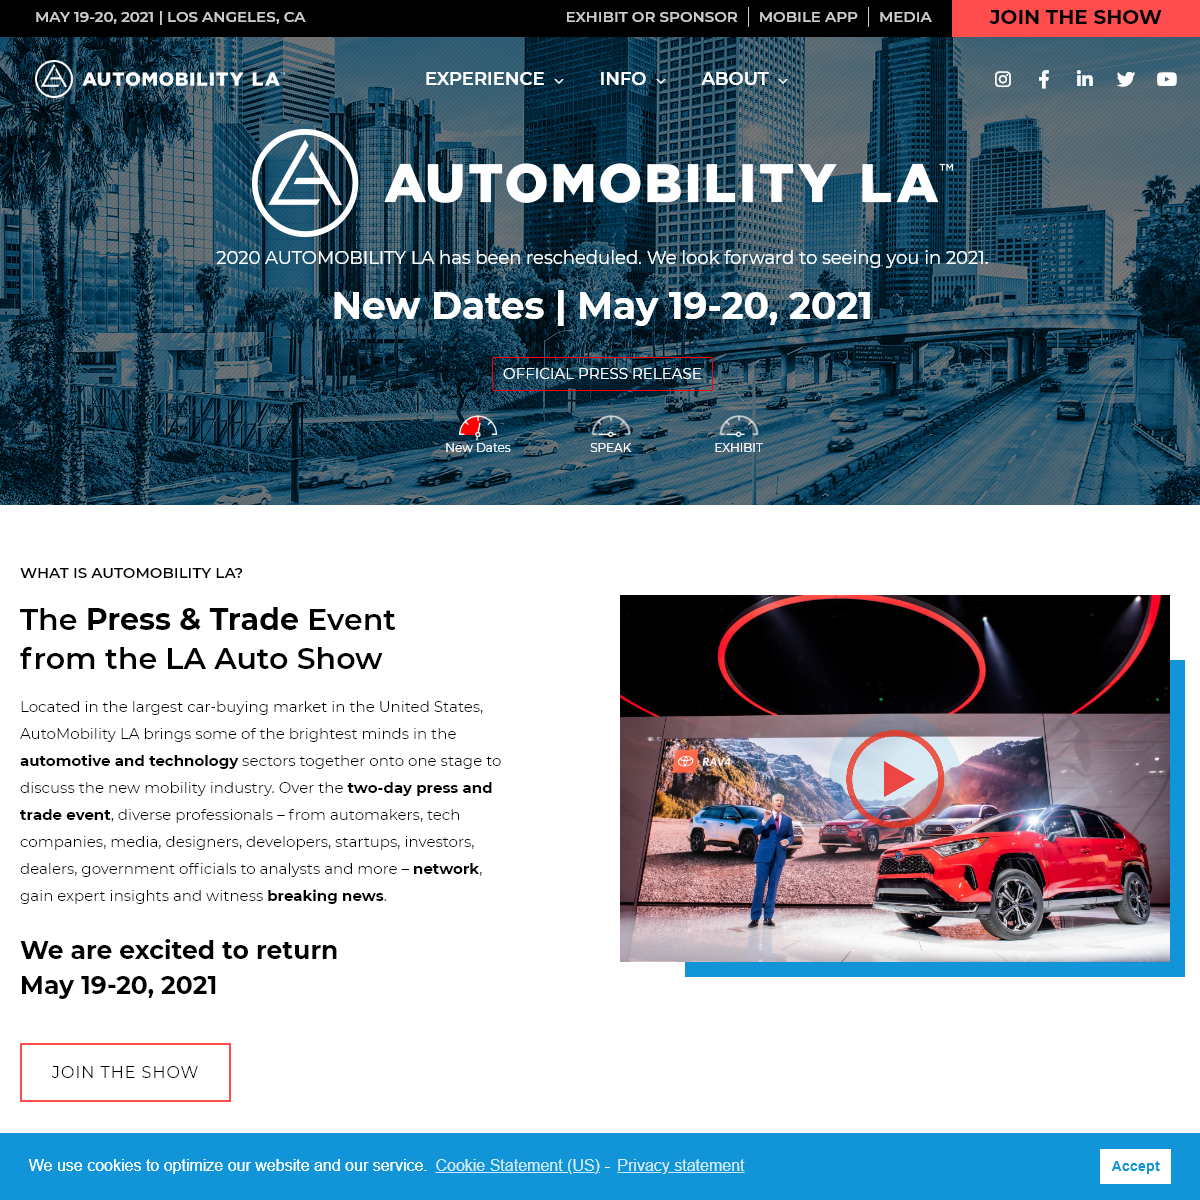 A complete backup of automobilityla.com